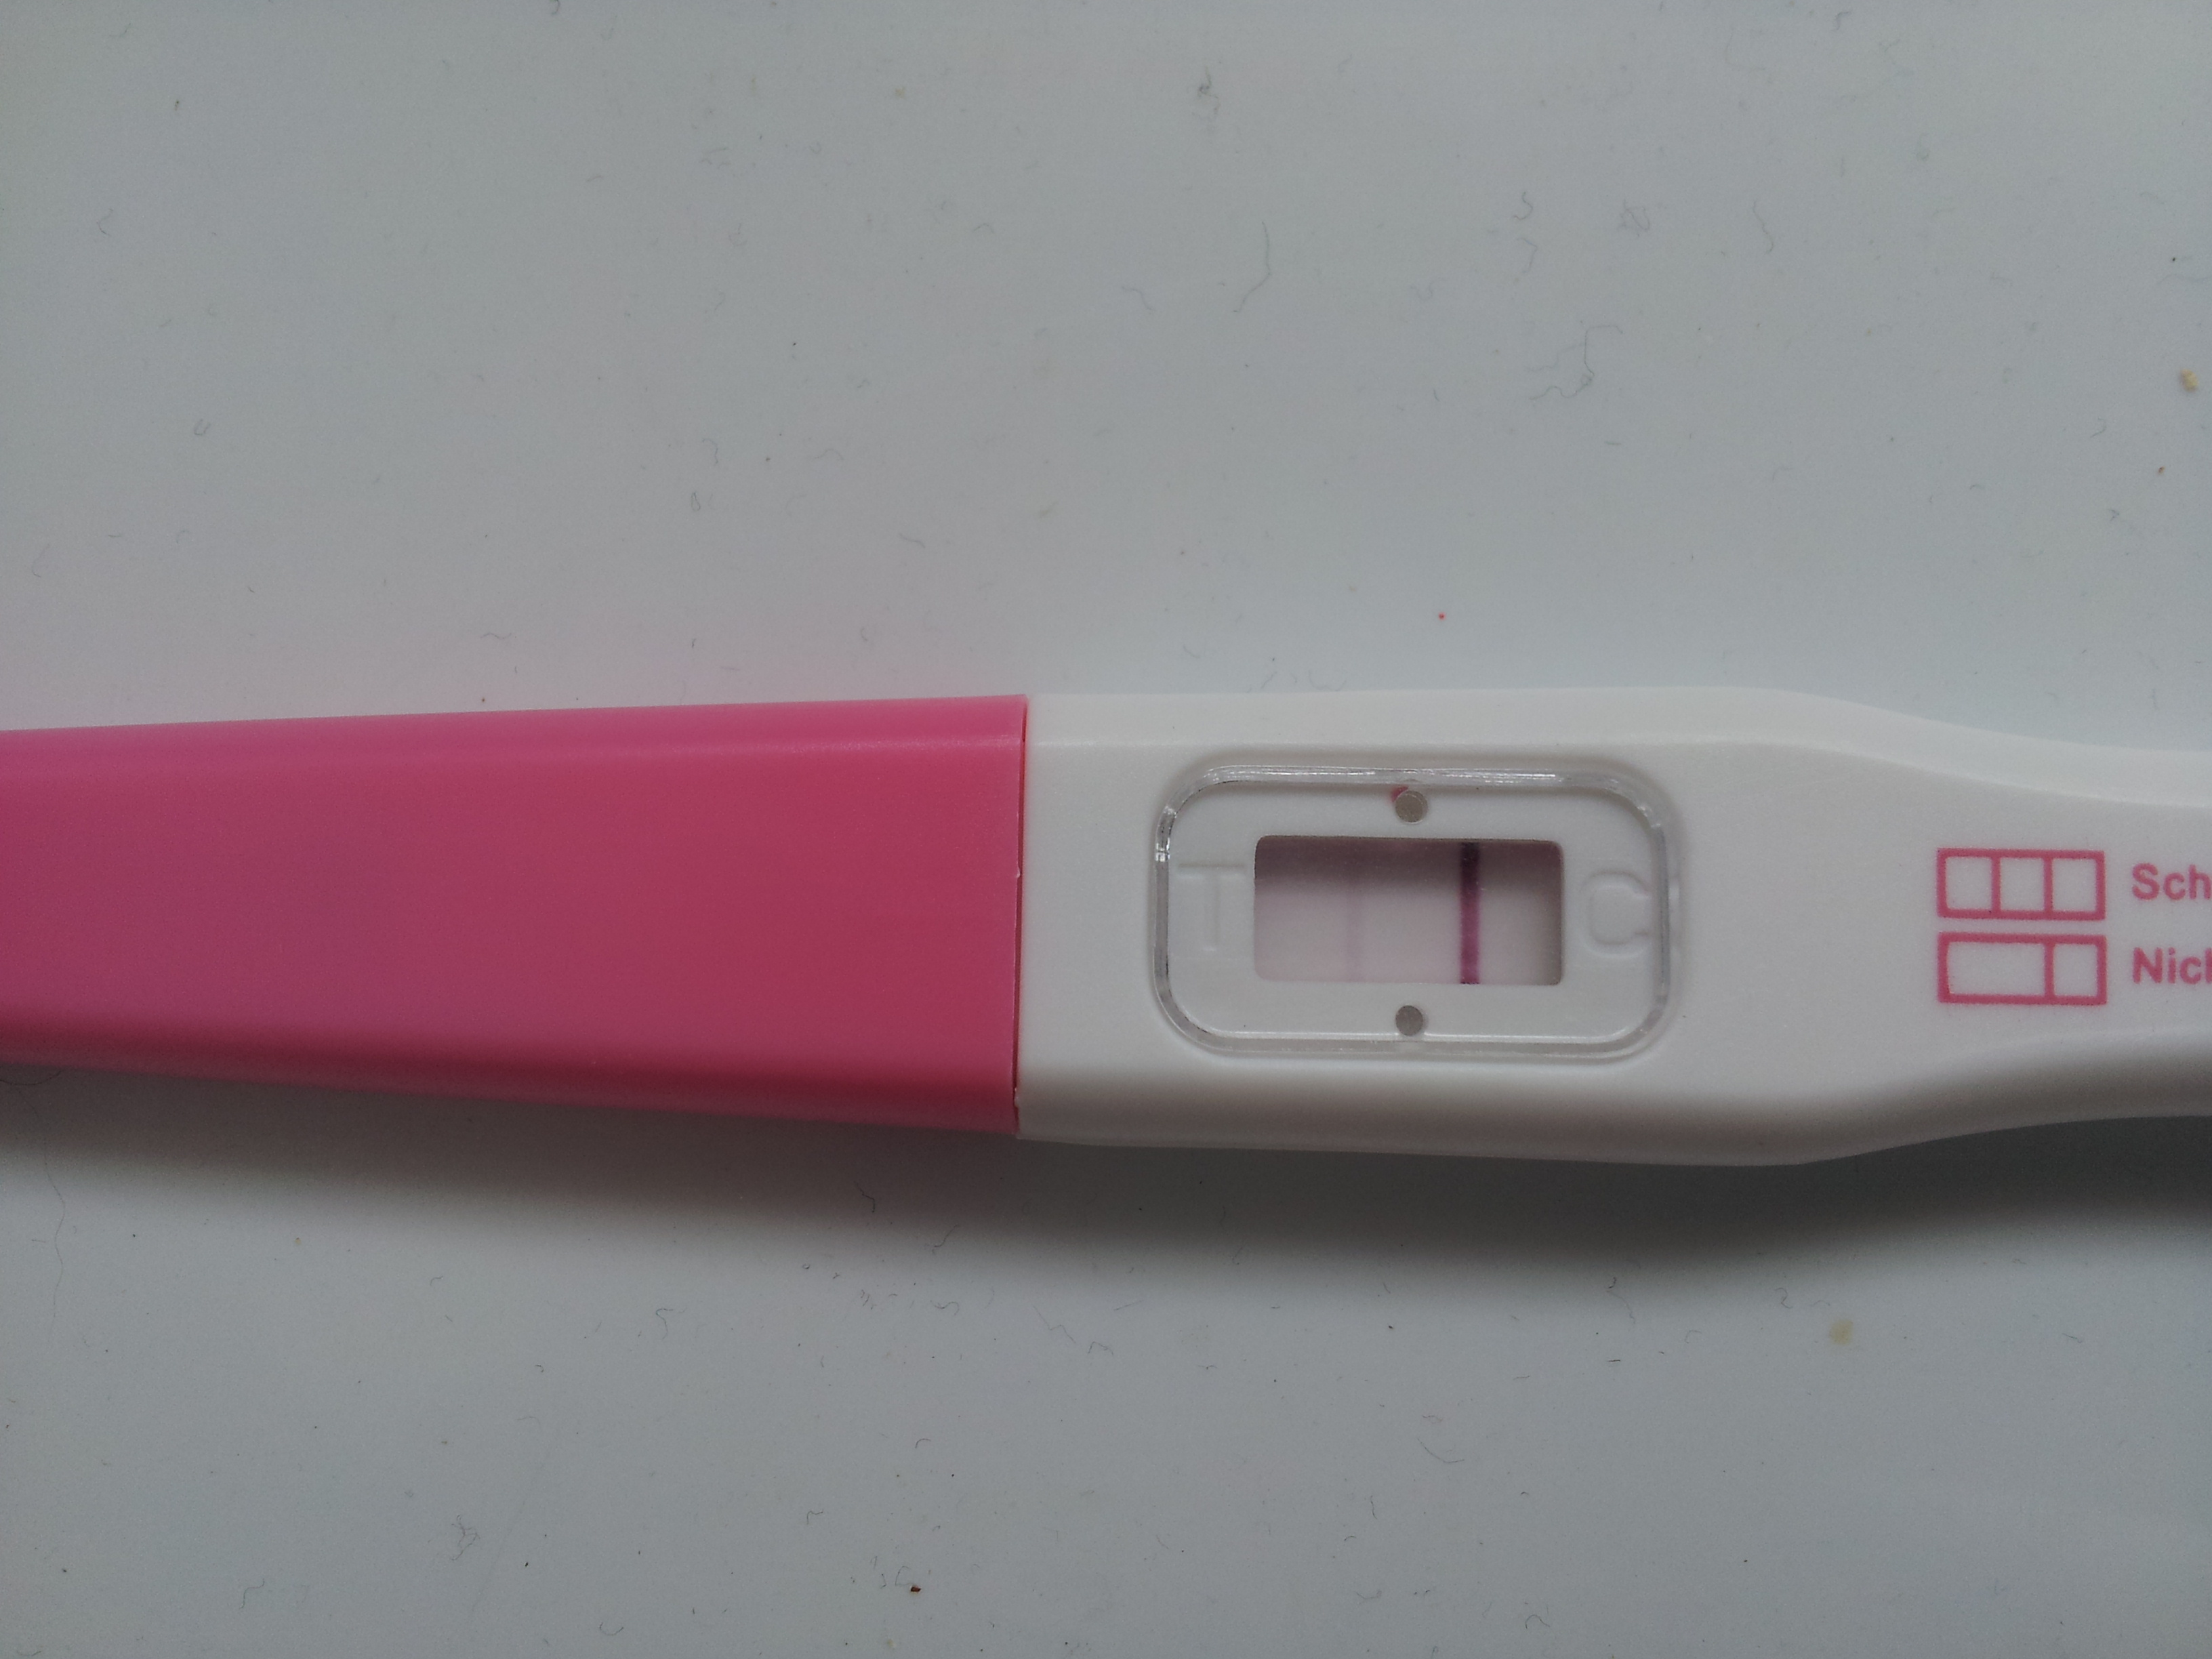 Schwangerschaftstest nach einigen Minuten deutlich positiv ... - 3264 x 2448 jpeg 1330kB